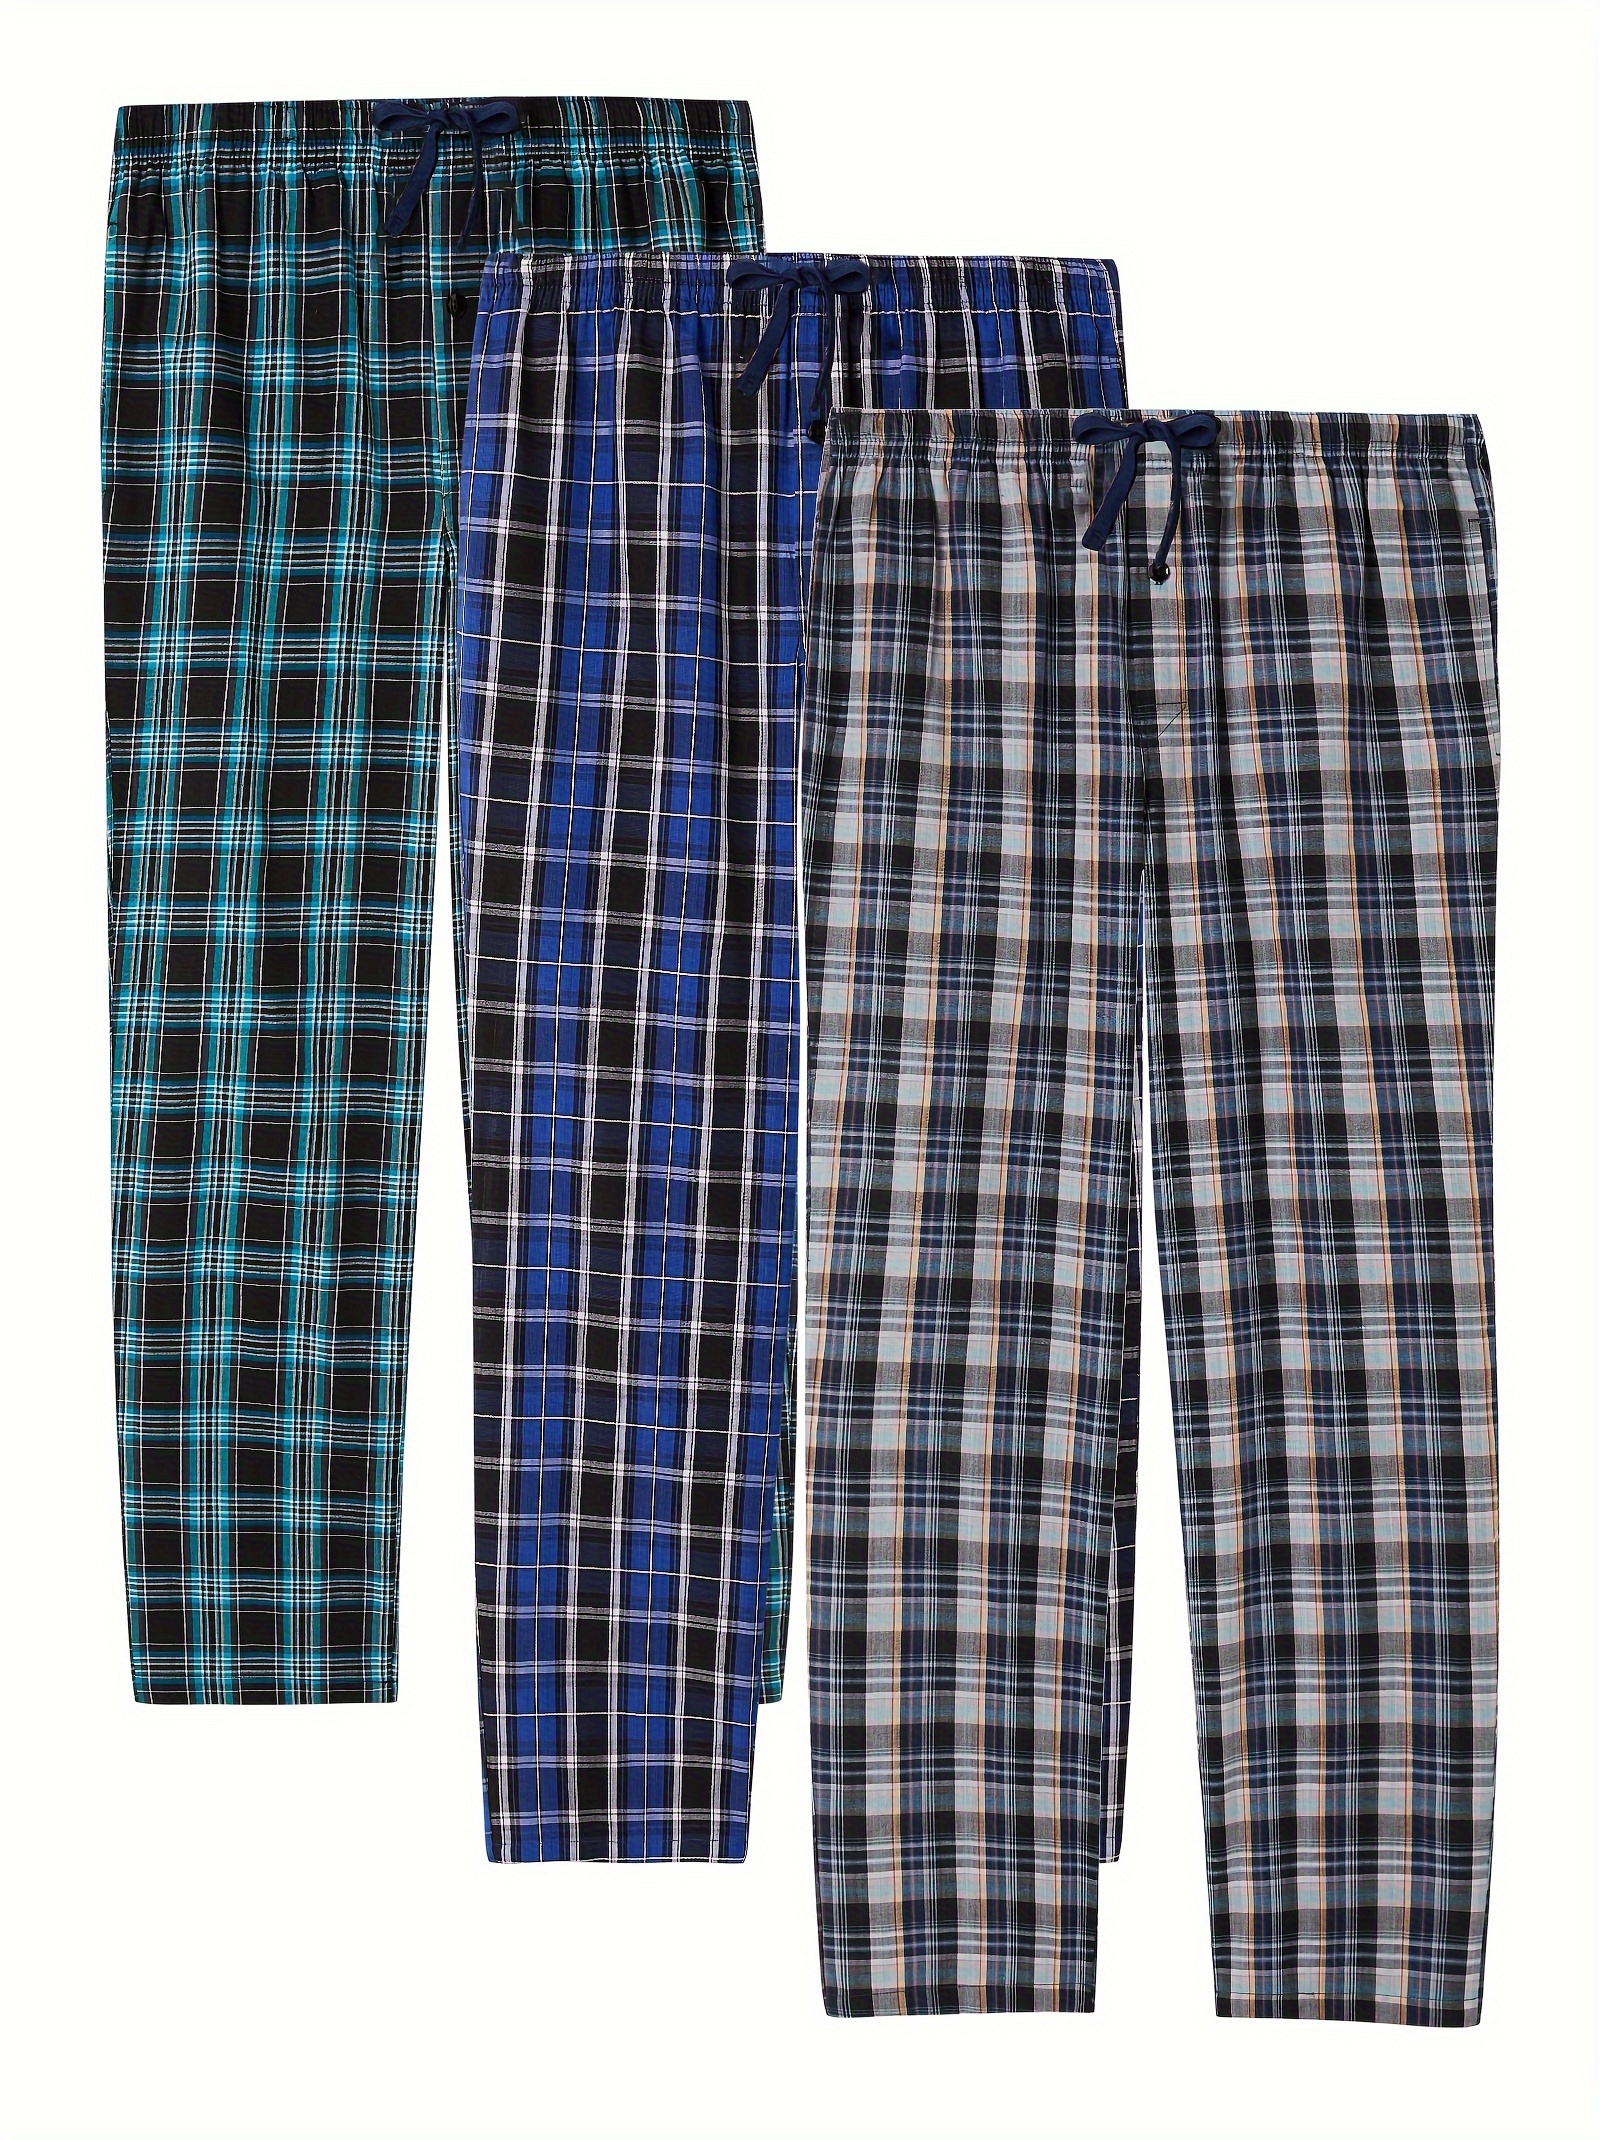 Pantalon d'interieur, bas de pyjama homme en flanelle de coton, carreaux  bleu